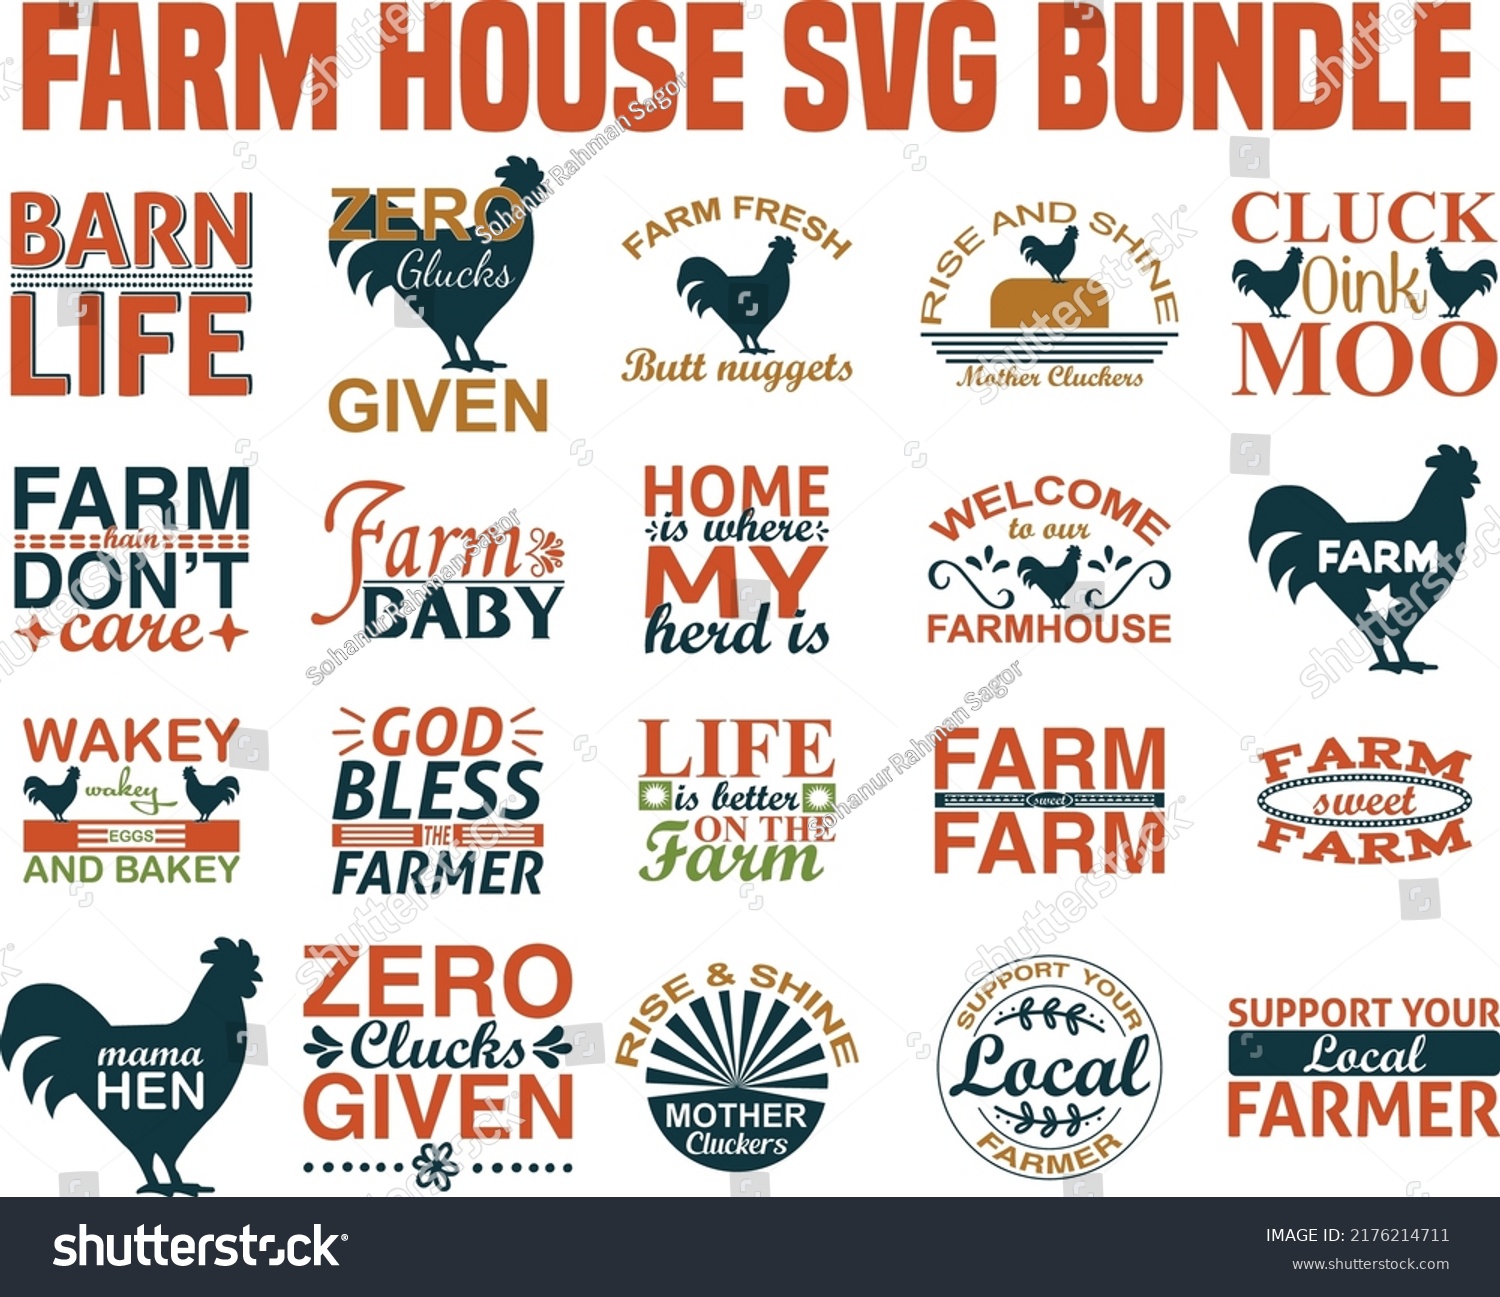 SVG of Farm house Svg Bundle.Farm house T-shirt Design Svg Bundle. svg